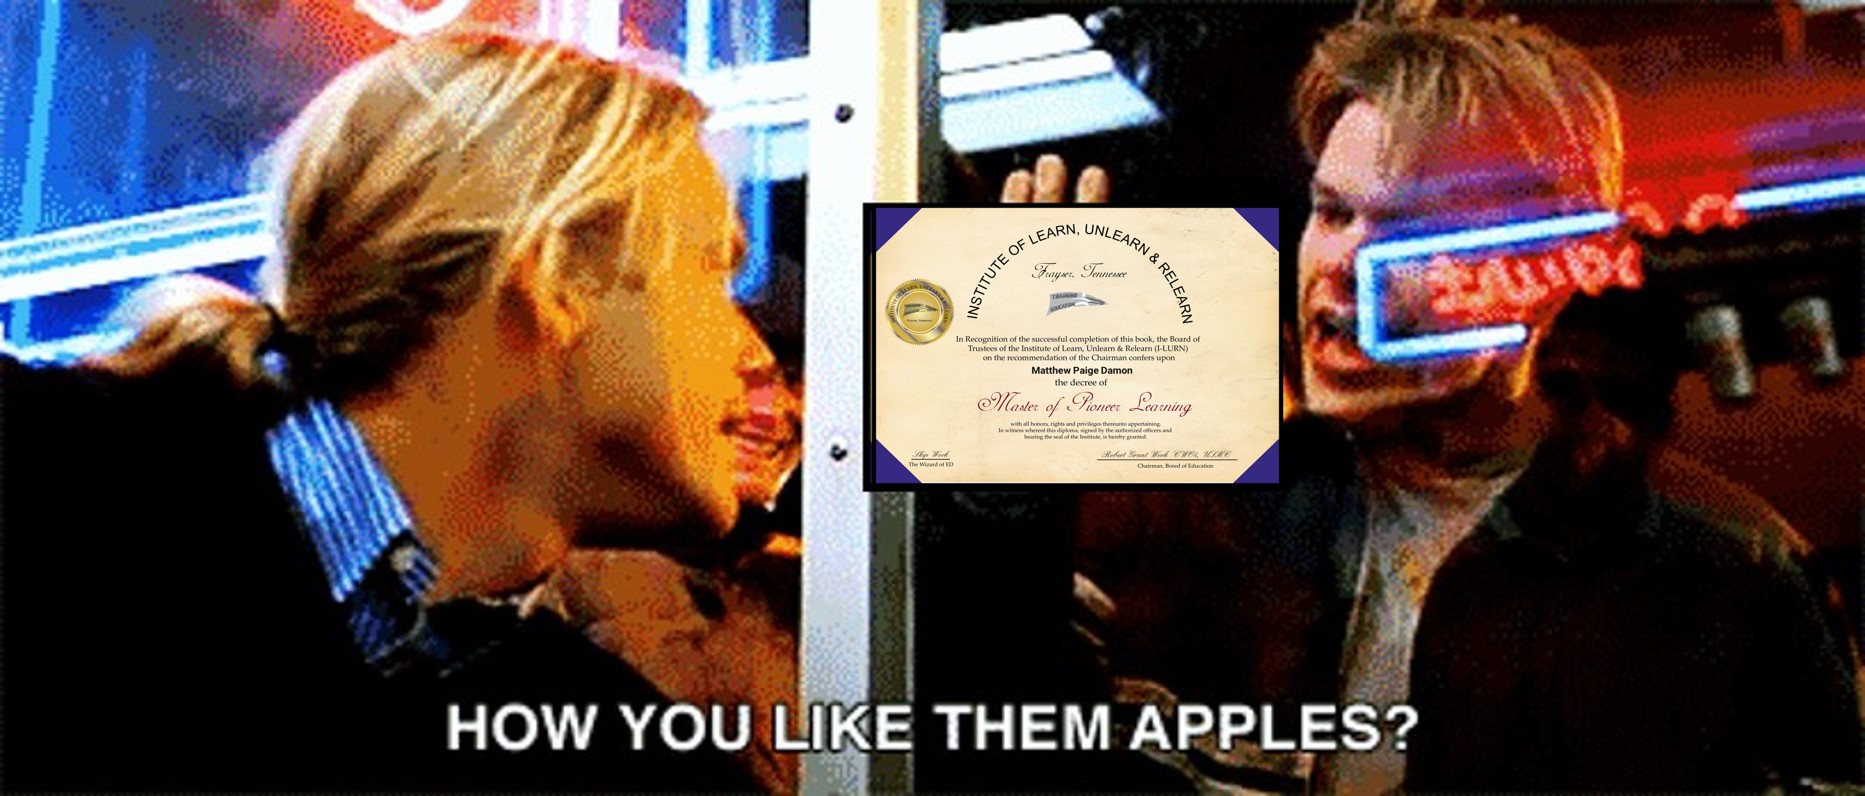 Matt Damon How do you like them apples